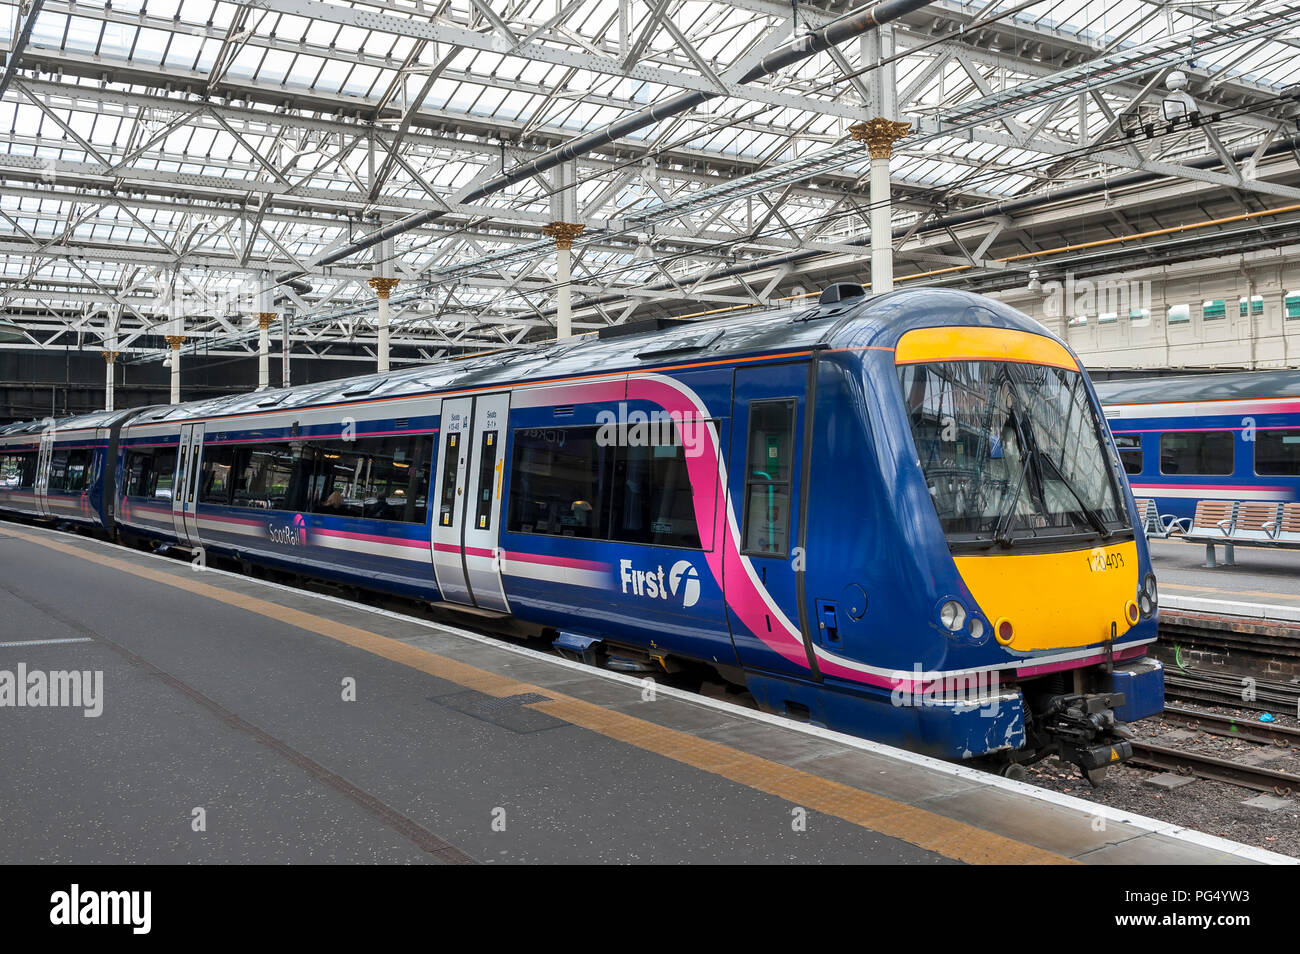 ScotRail class 170 Turbostar train de passagers en attente dans une gare ferroviaire au Royaume-Uni. Banque D'Images